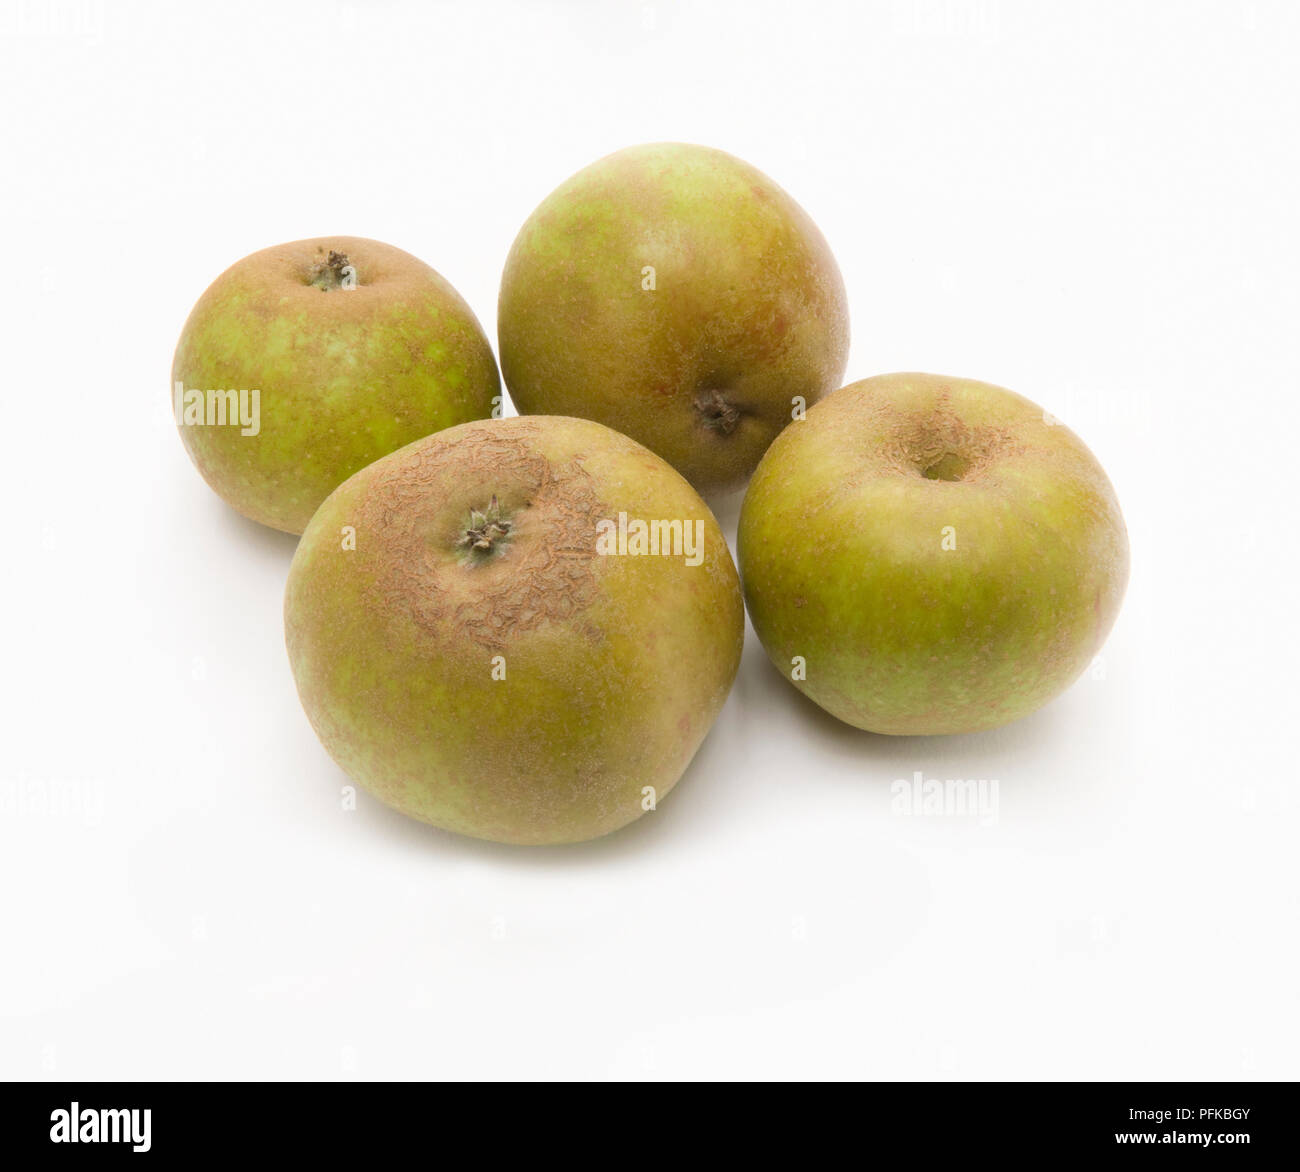 Mele "Ashmead Kernel dell', quattro mele coltivate in Gran Bretagna, close-up Foto Stock